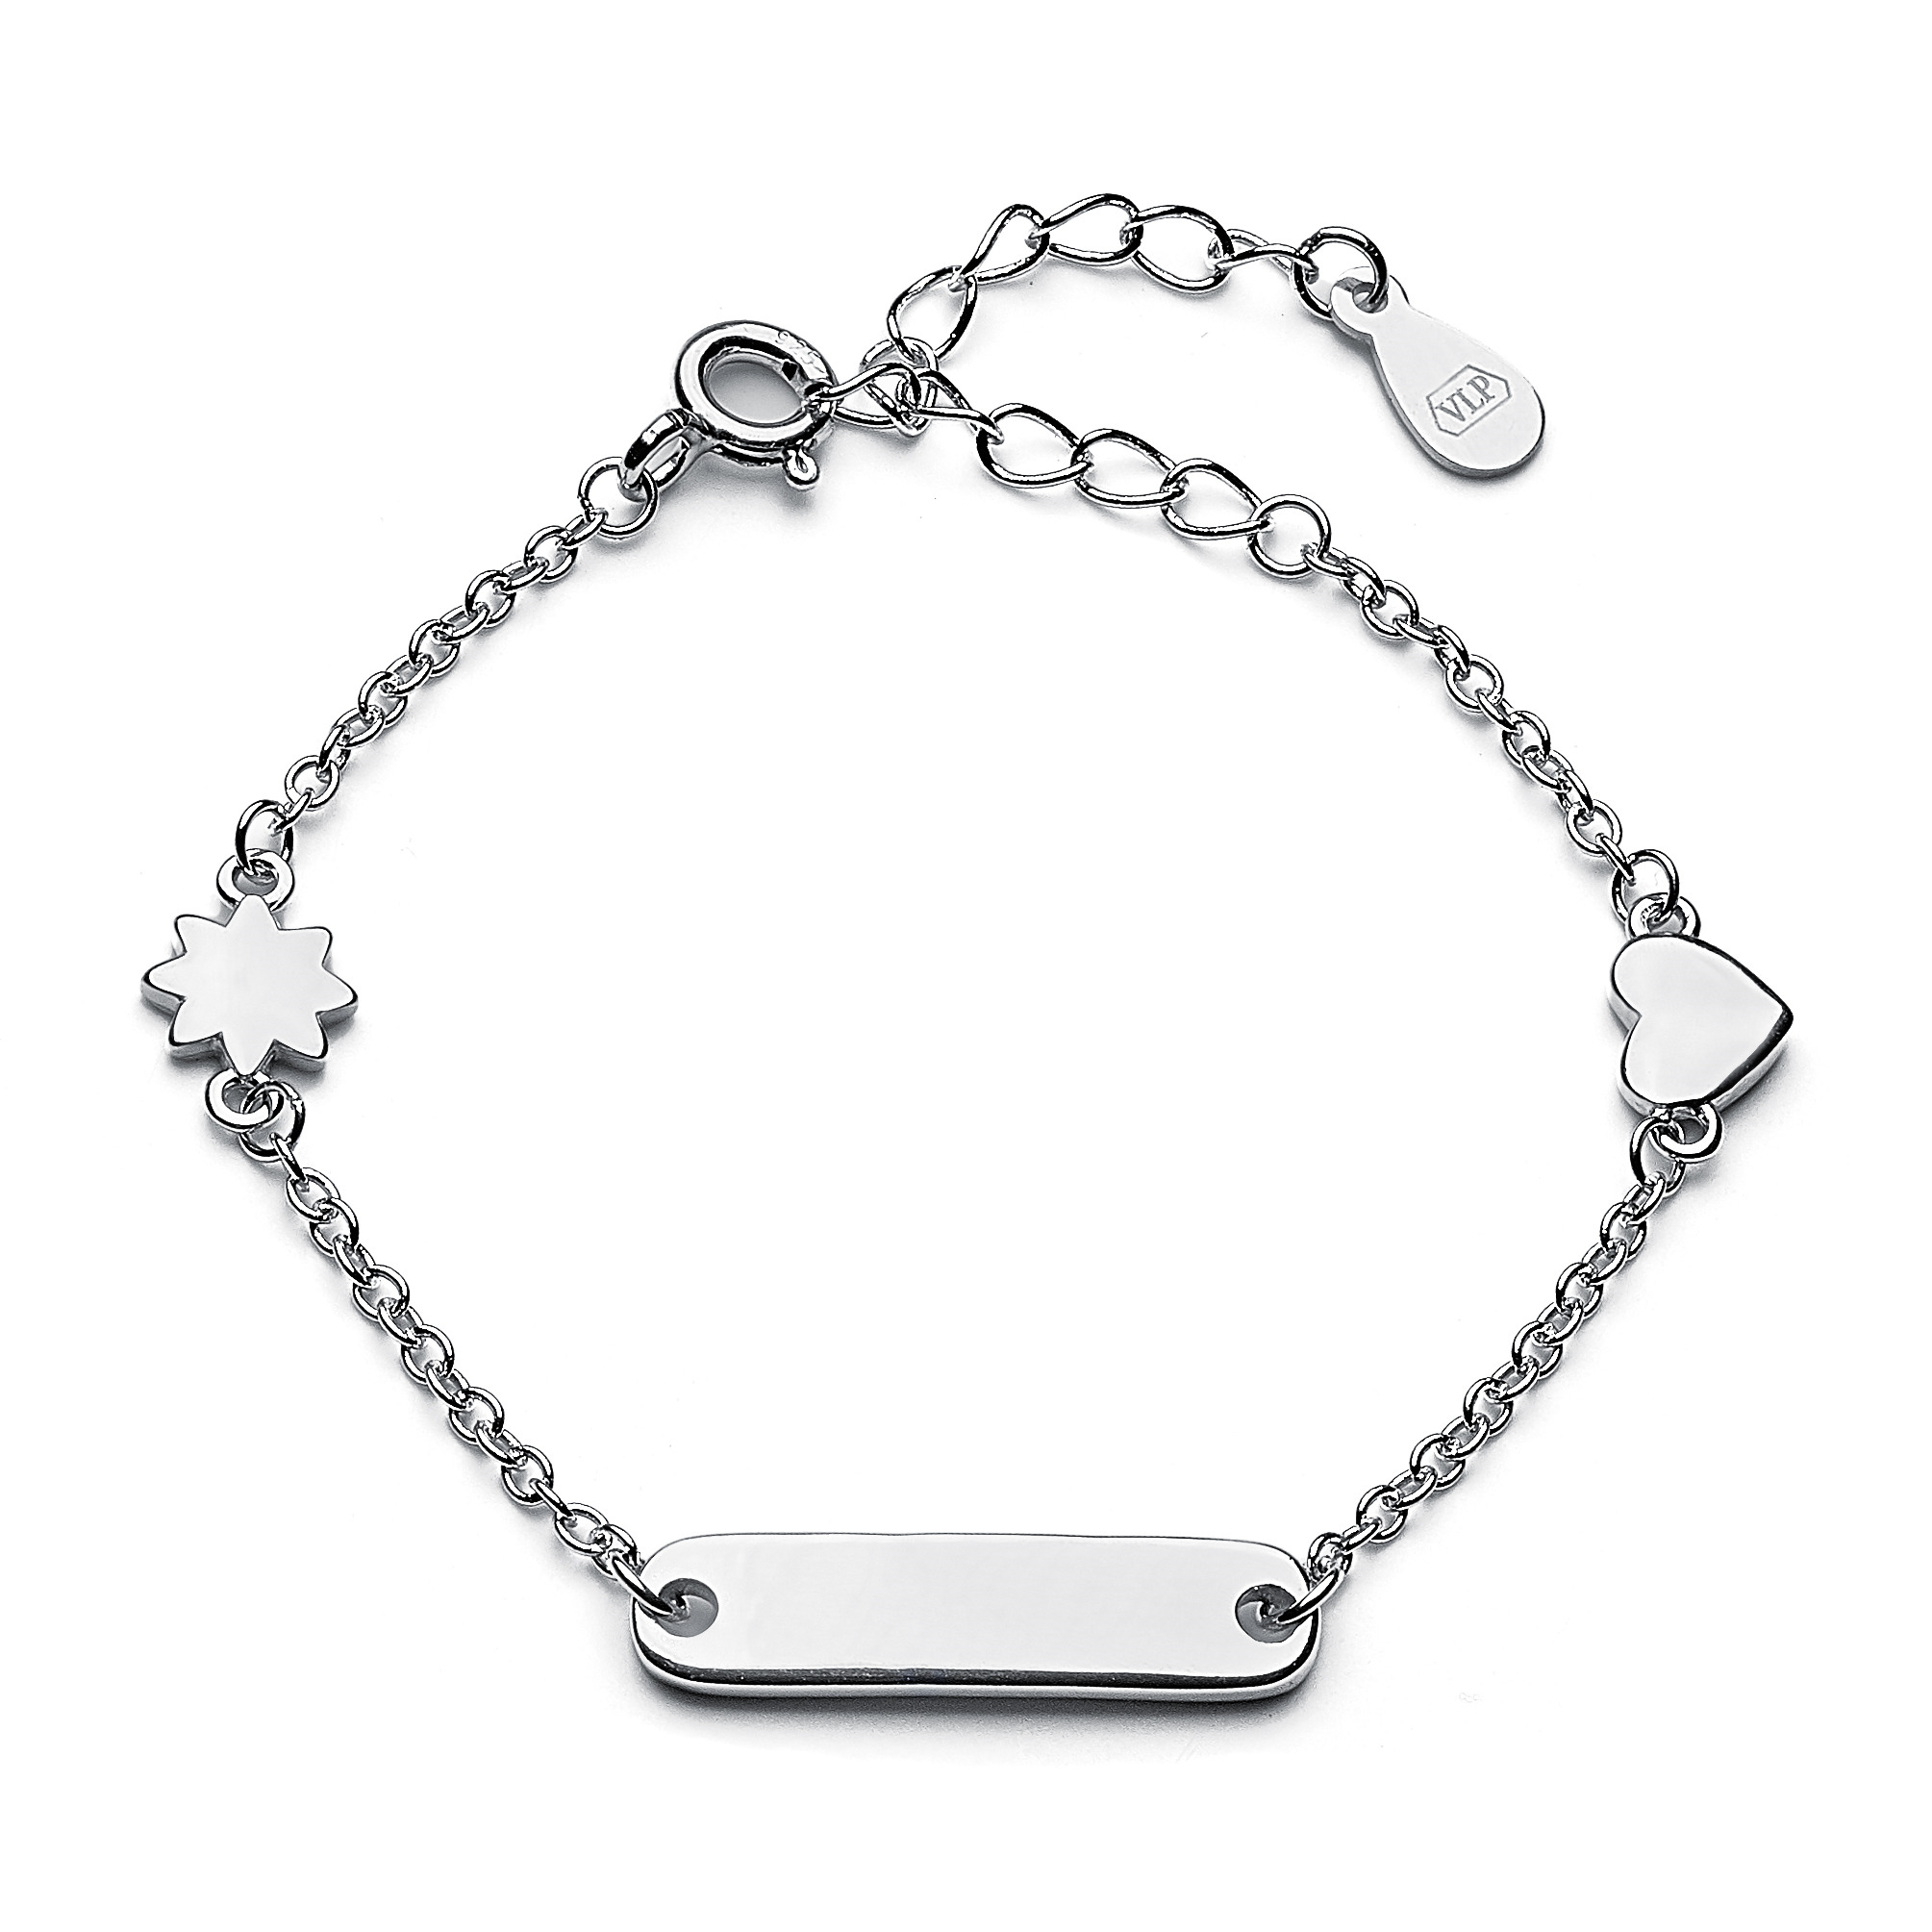 Šperky4U Dětský stříbrný náramek s destičkou, možnost rytiny, délka 12+3 cm Náramek: s jednostrannou rytinou